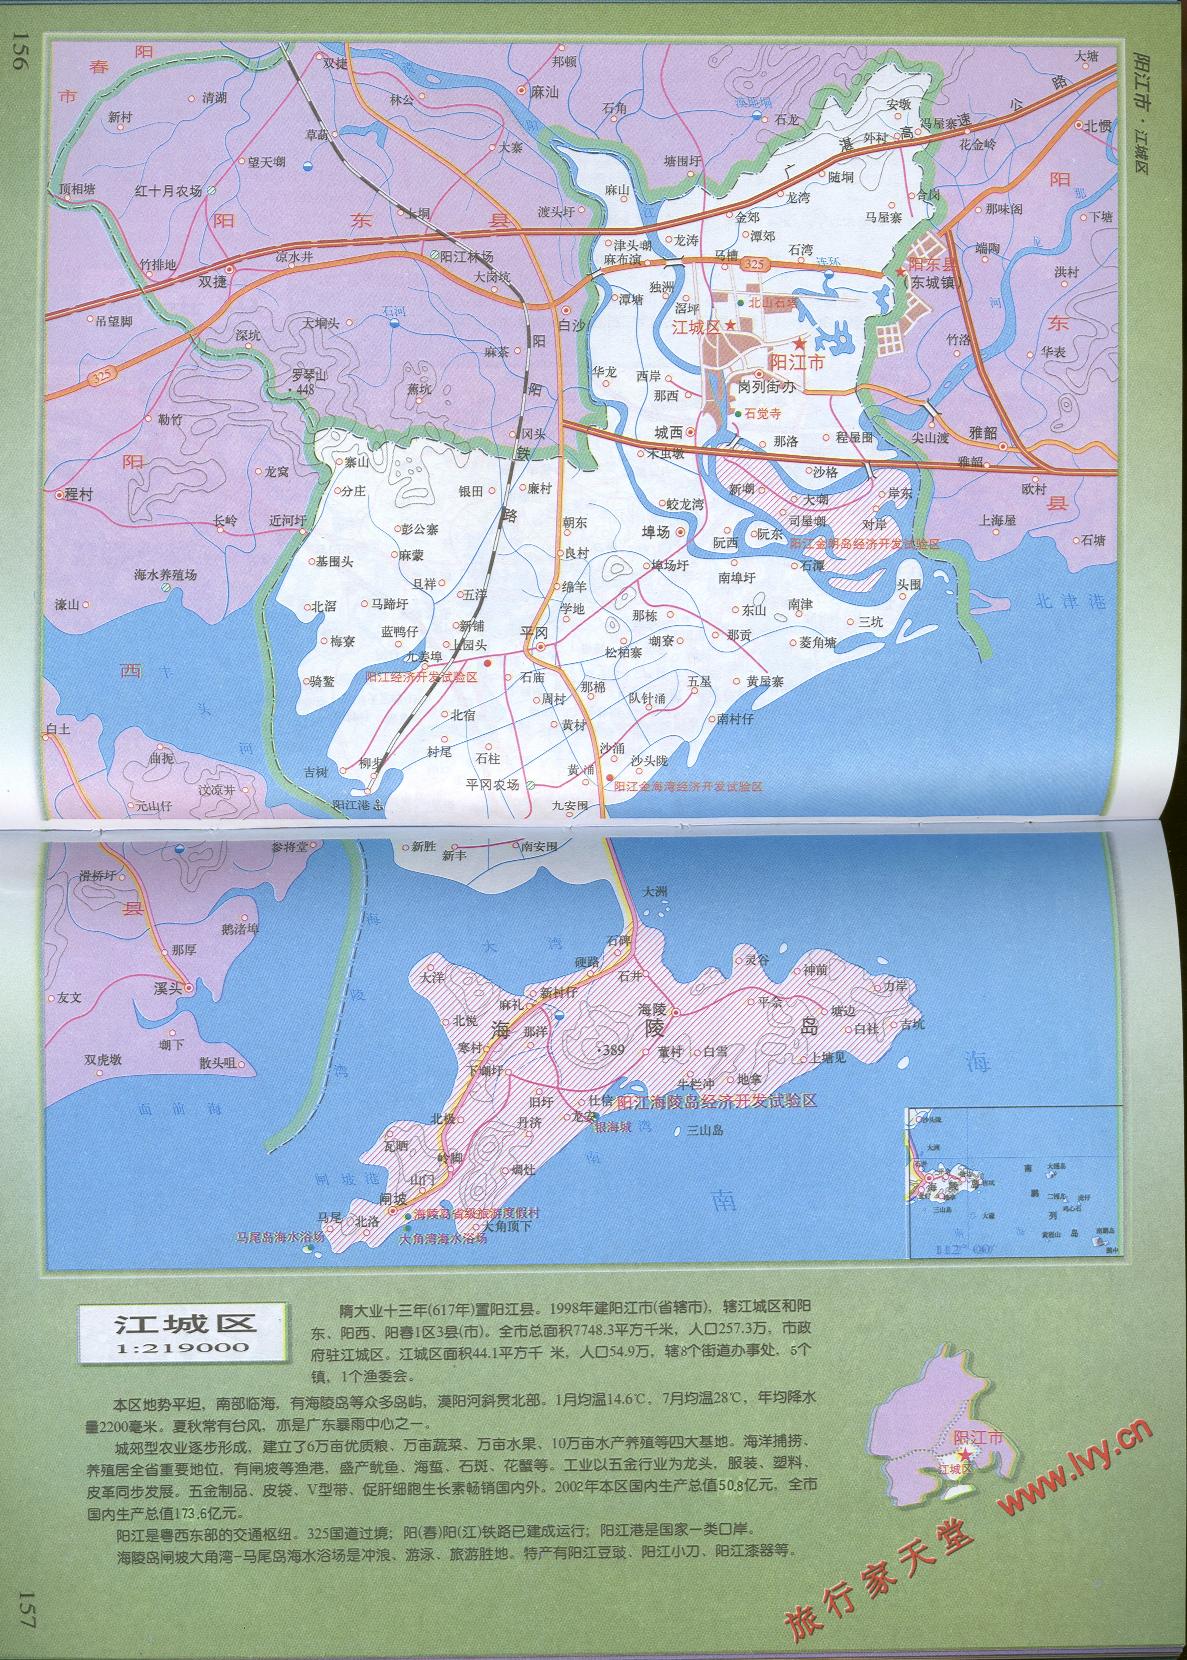 阳江市地图高清版大图,阳江市地形图 - 伤感说说吧